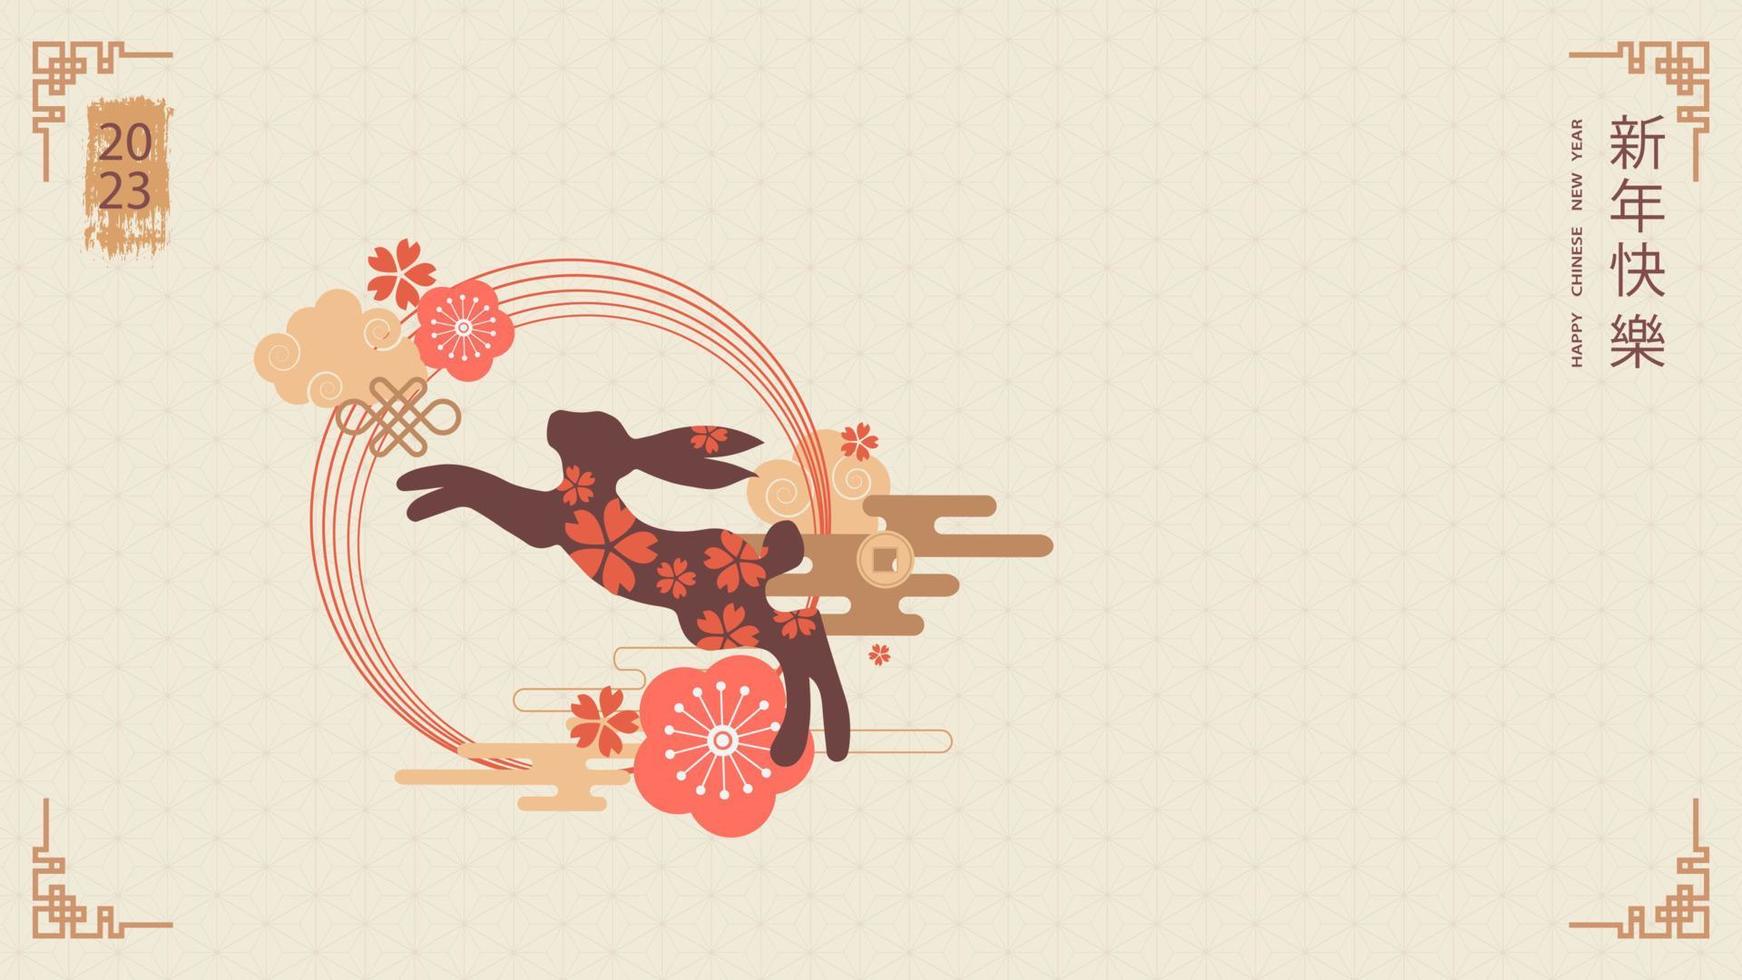 baner mall för kinesisk ny år design med Hoppar kanin och traditionell mönster och element. översättning från kinesisk - Lycklig ny år, kanin symbol. vektor illustration